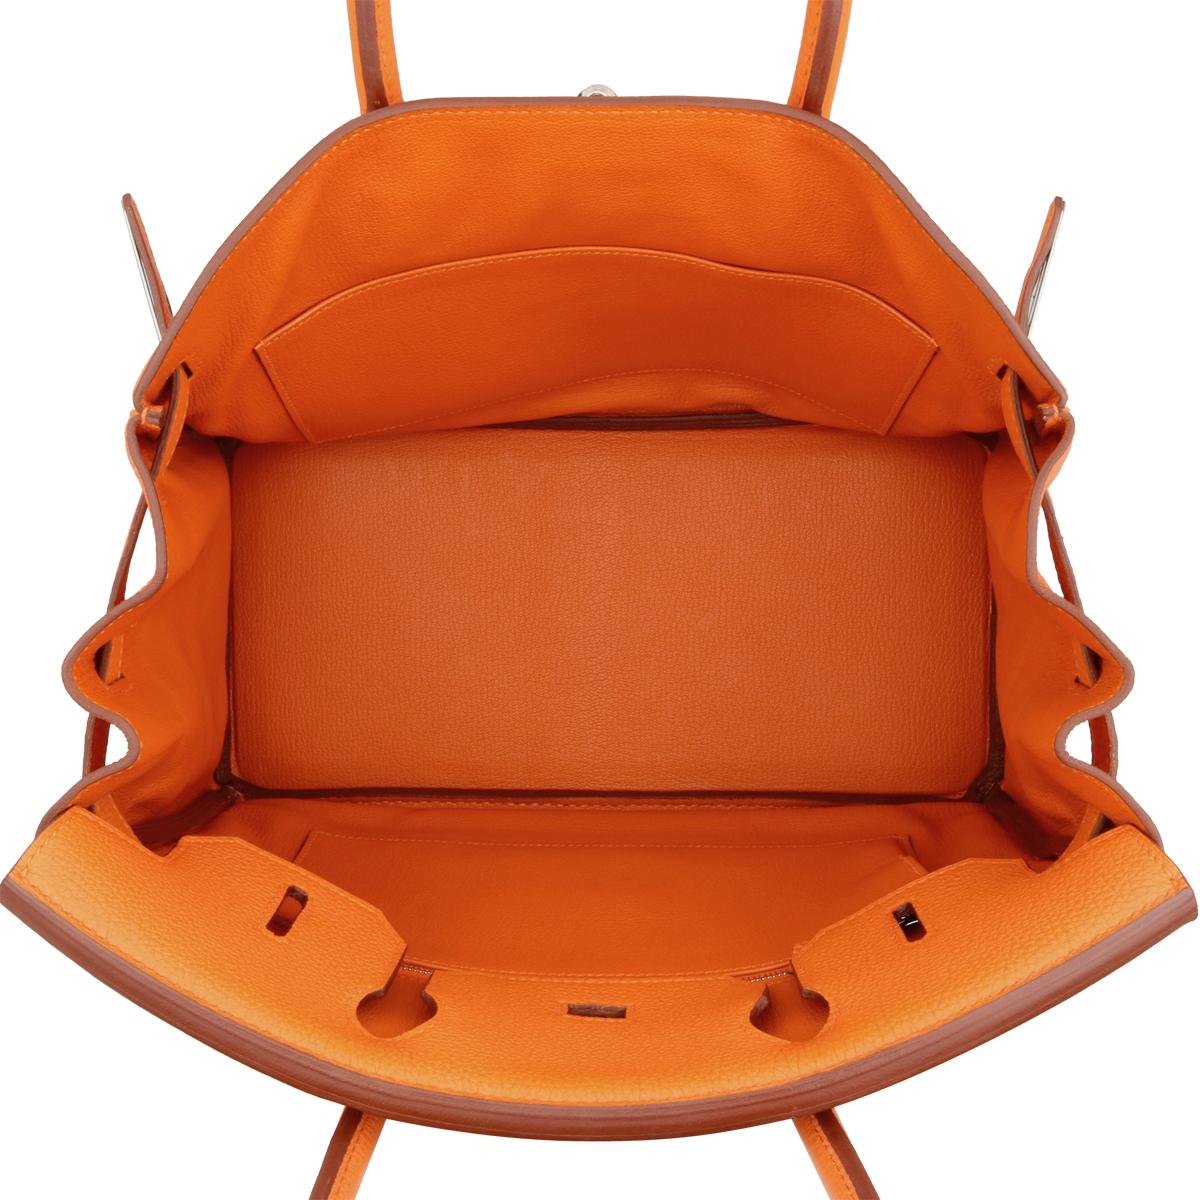 Hermès Birkin Bag 30cm Orange Togo Leather with Palladium Hardware Stamp M 2009 11